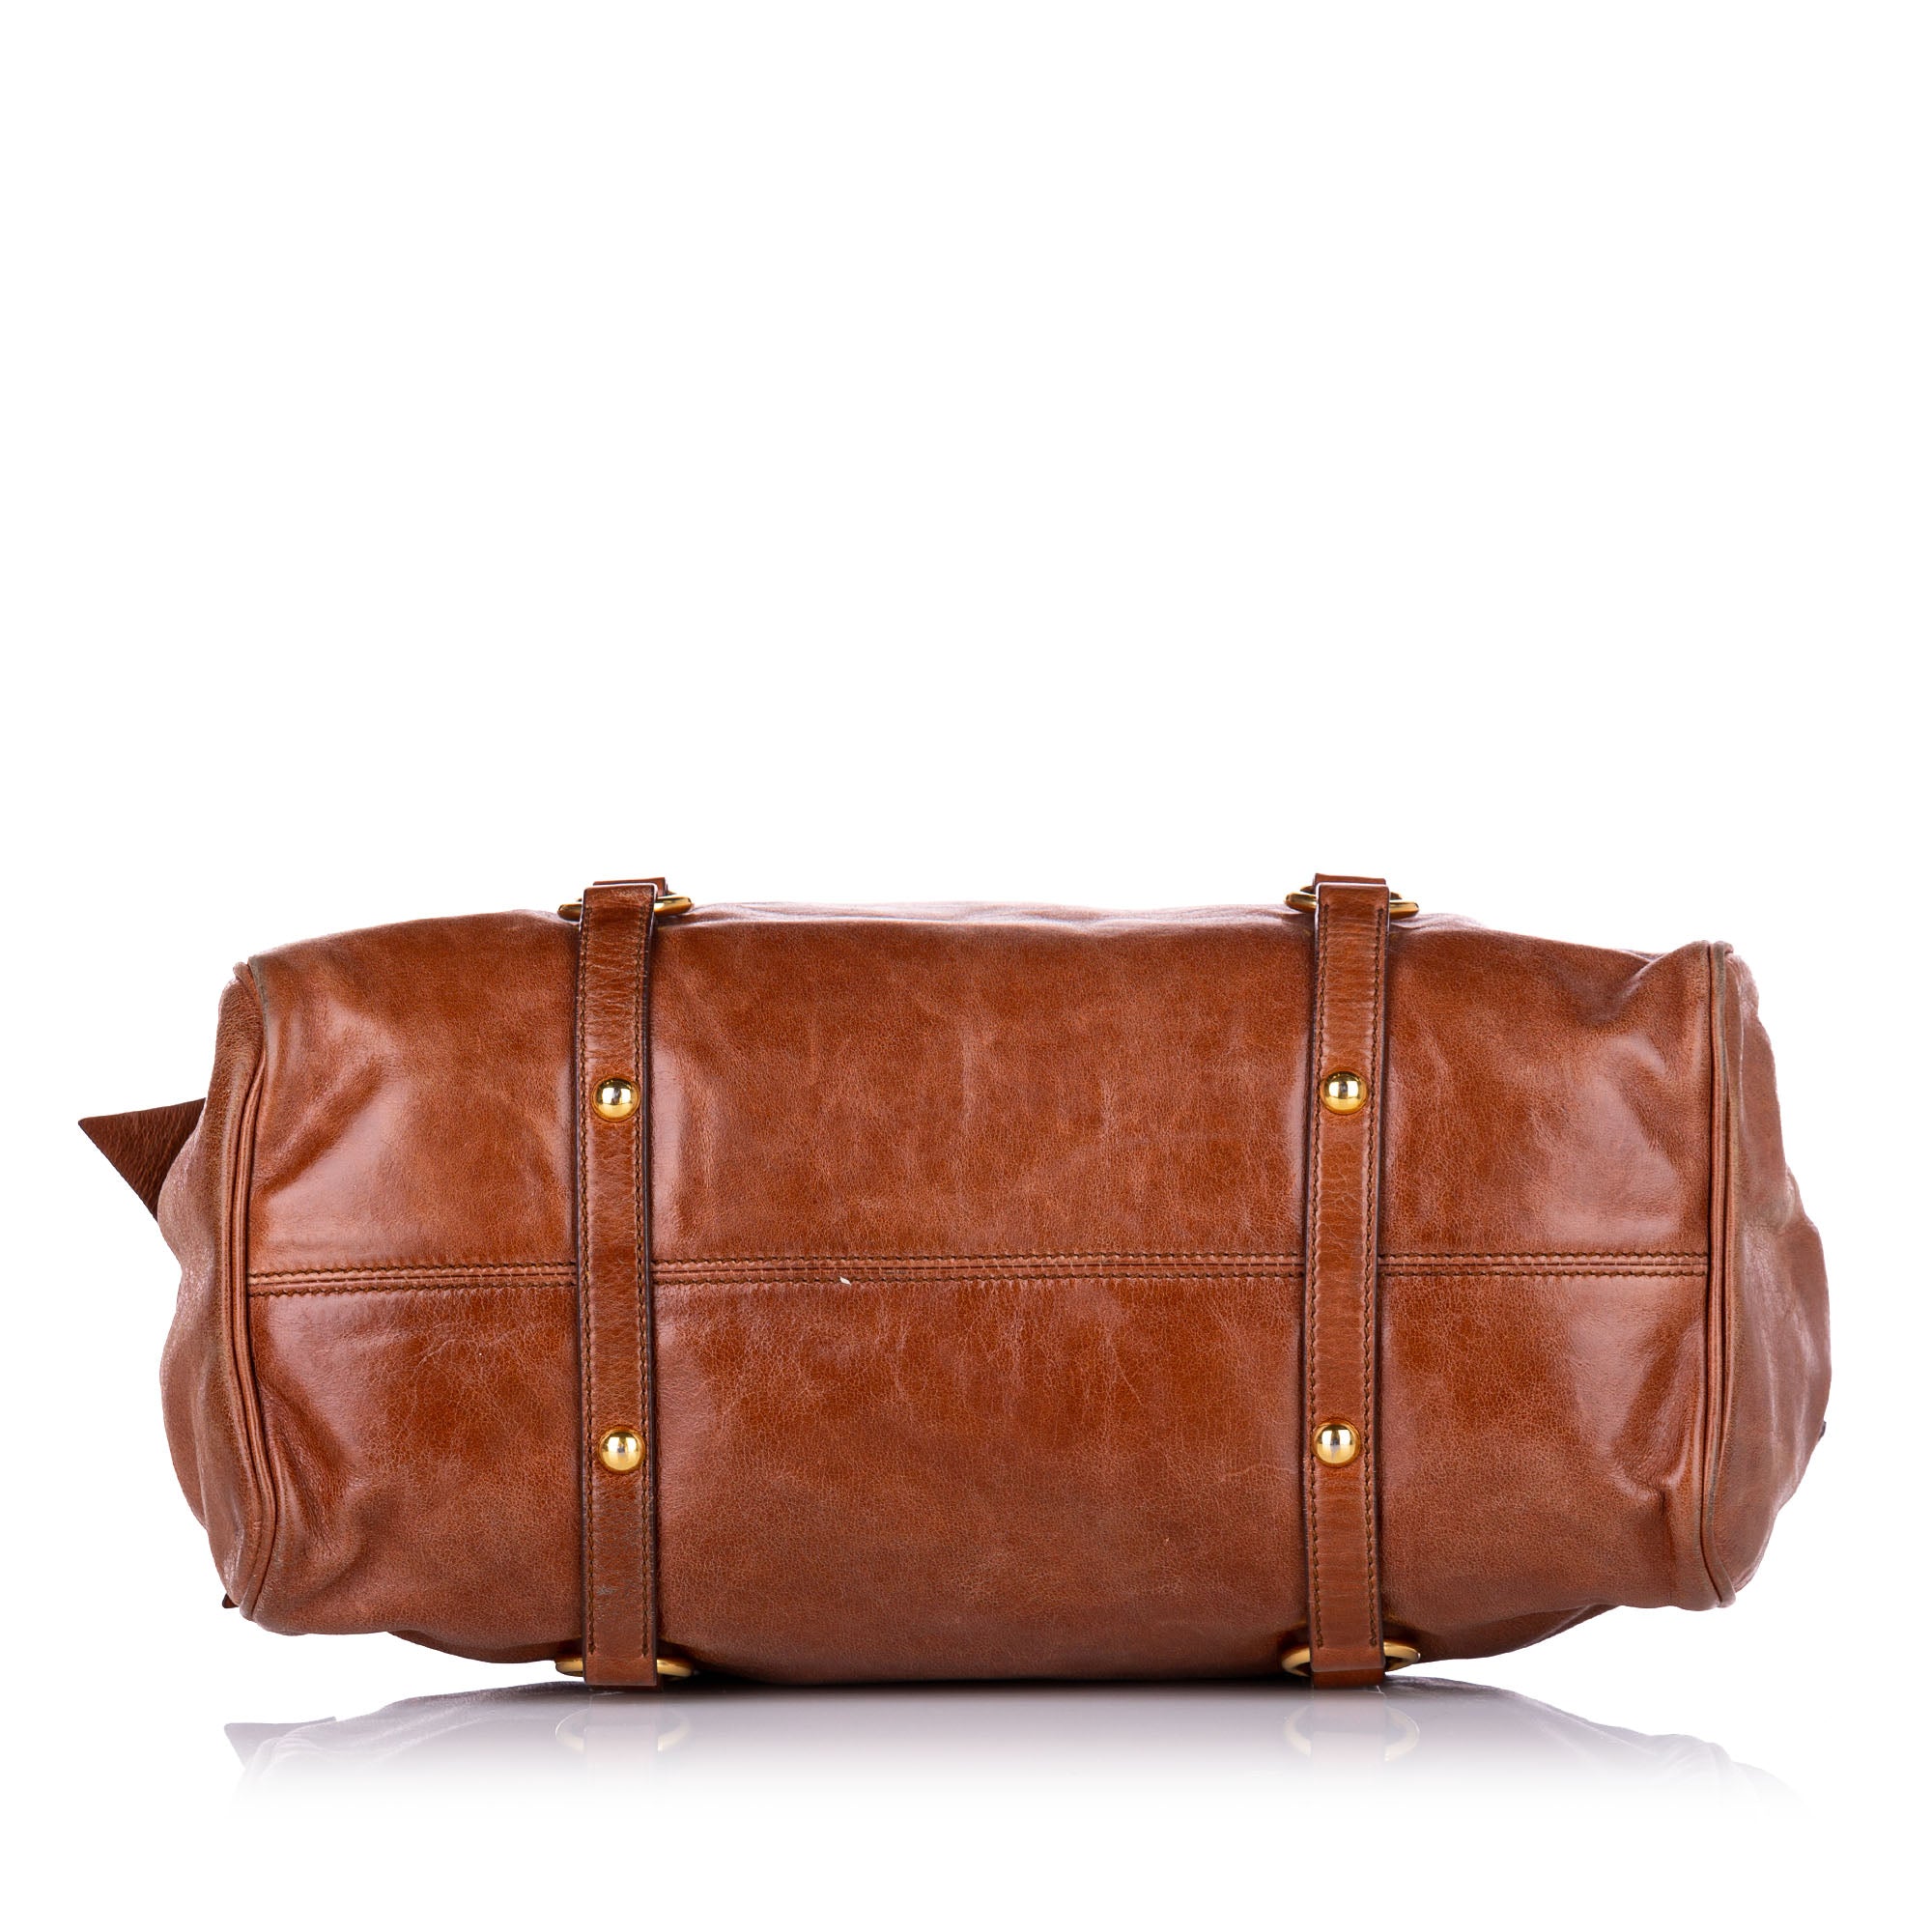 ASHWOOD - Genuine Leather Holdall - Large Overnight/Travel